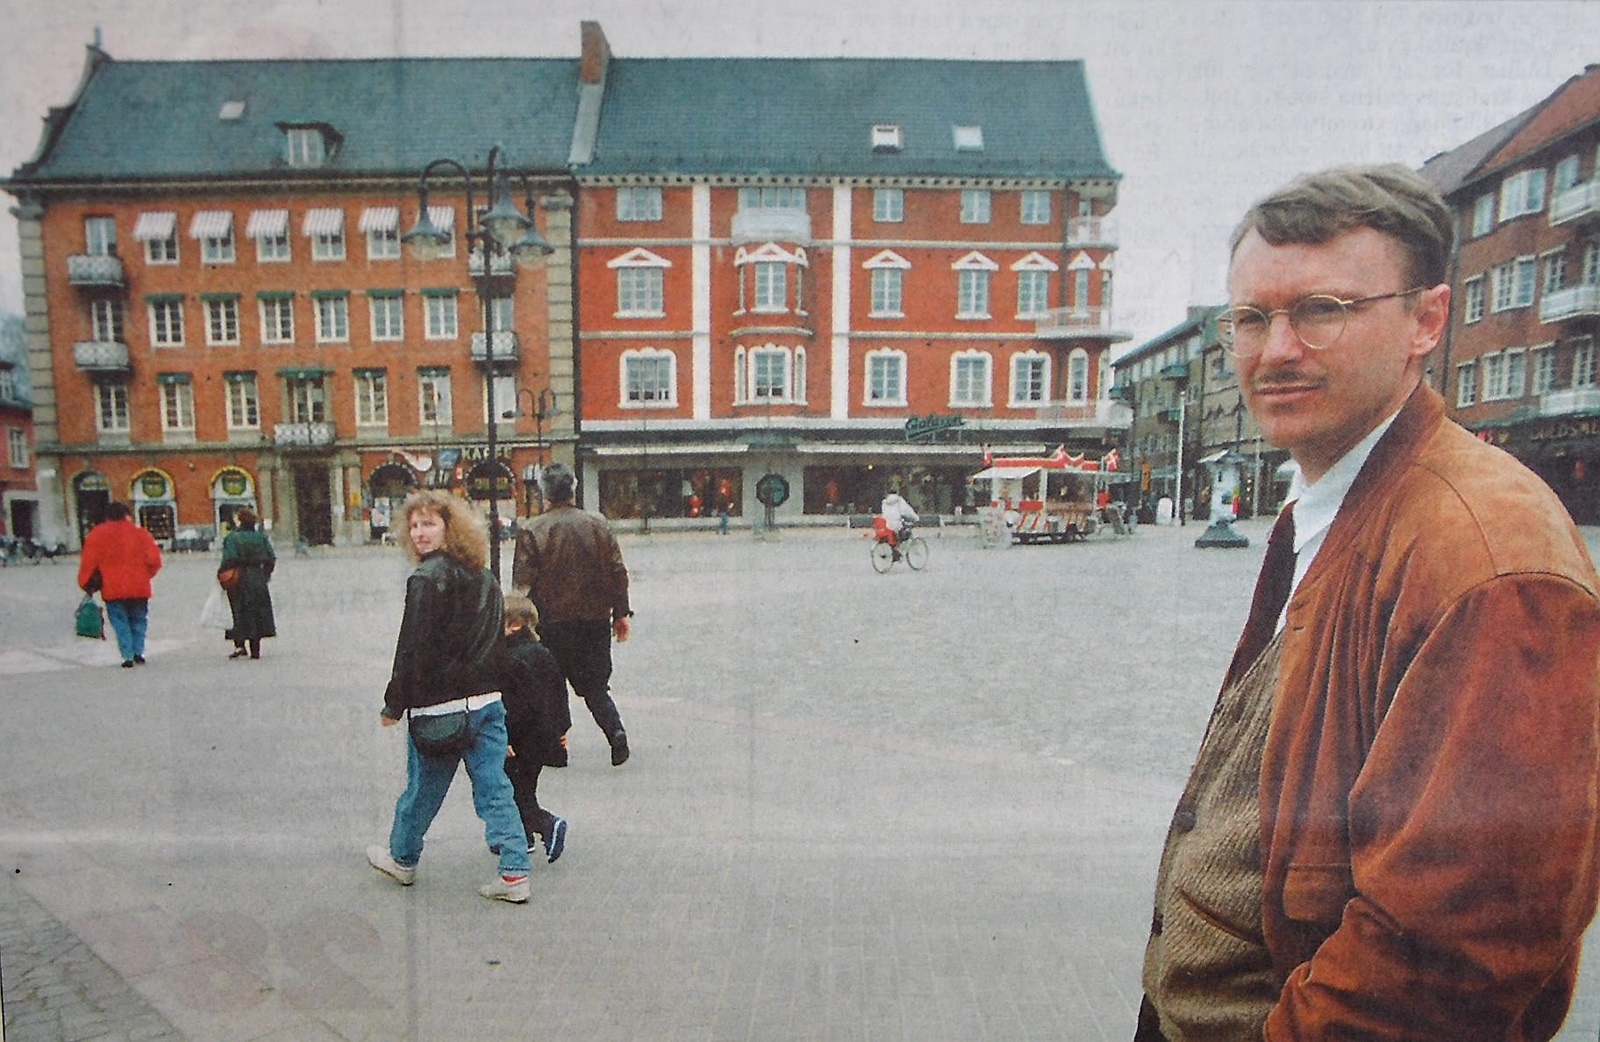 Visst har Hässleholm en ljus framtid, tycker arkitekt Sten Gromark om sin hemstad.
Arkiv: Gugge Nilsson